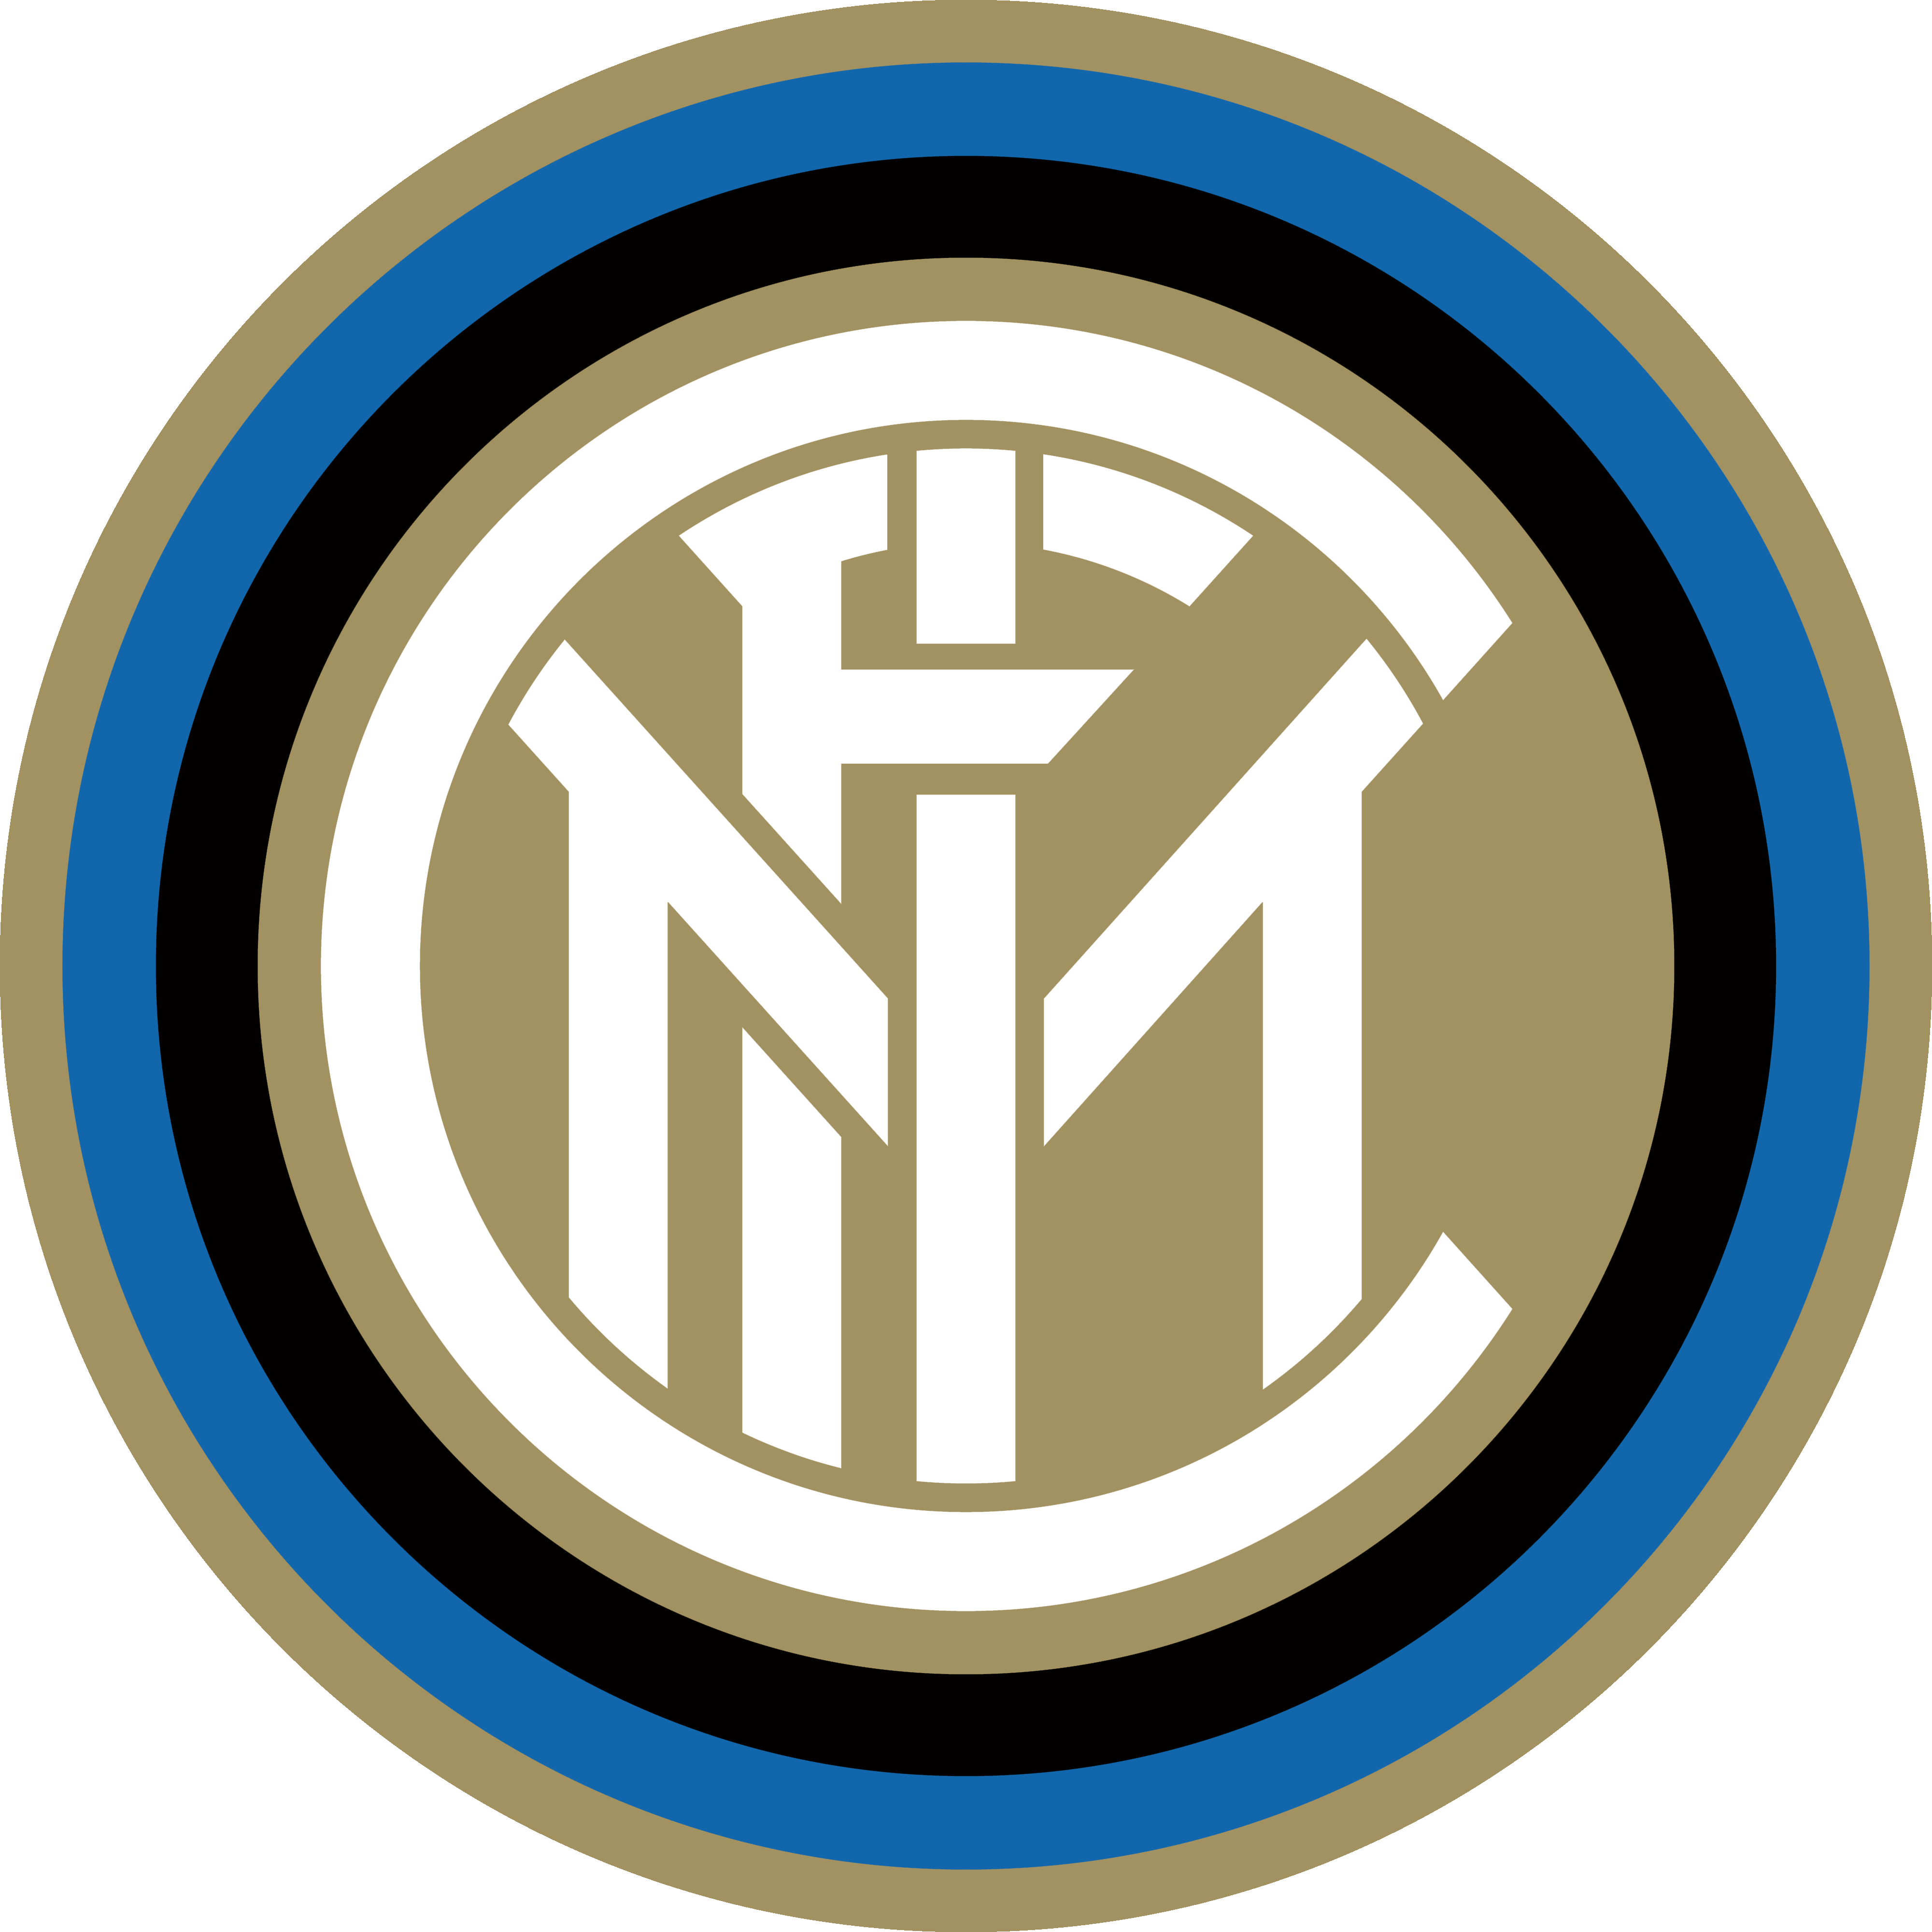 Fc Inter Logos Download